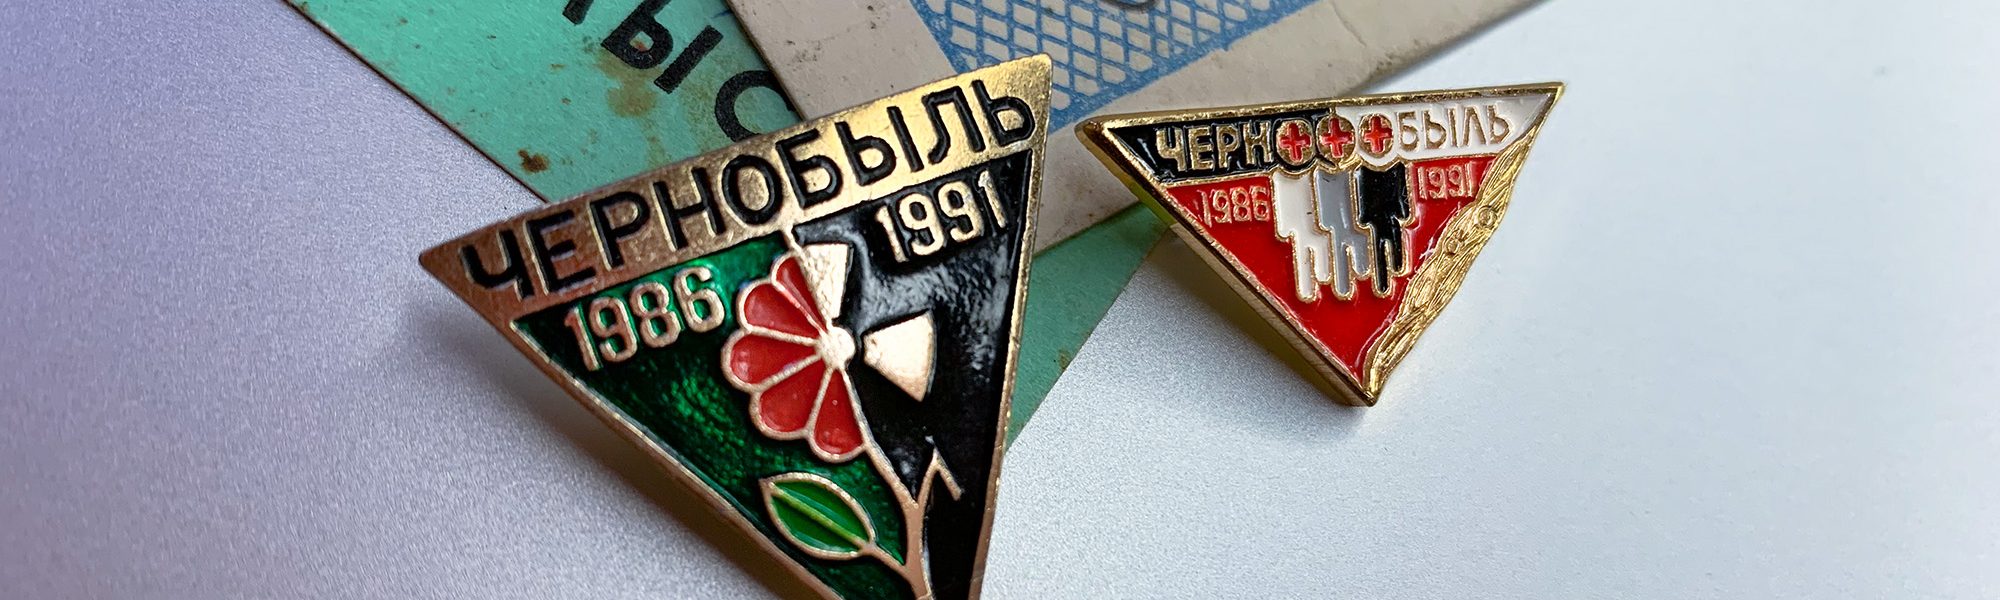 Spille commemorative 5 anni dopo Chernobyl